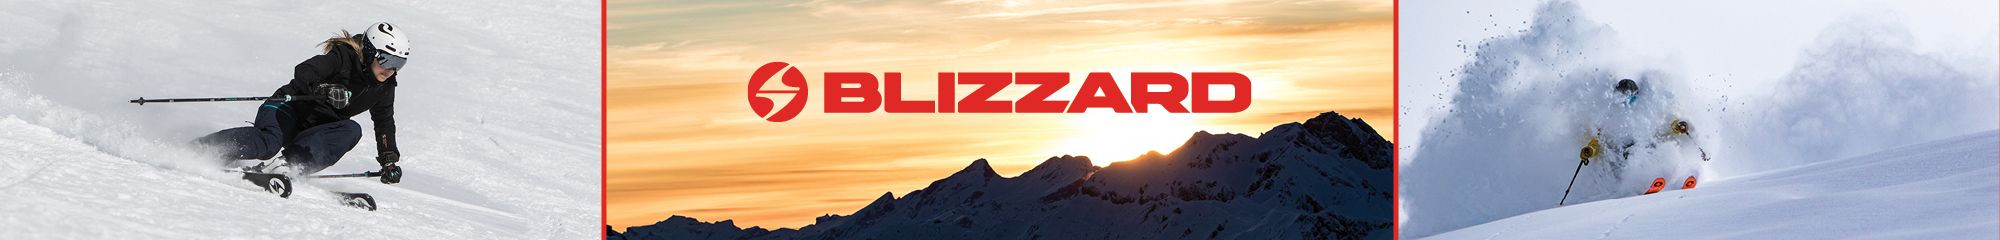 Blizzard Skis - Sun  Ski Sports